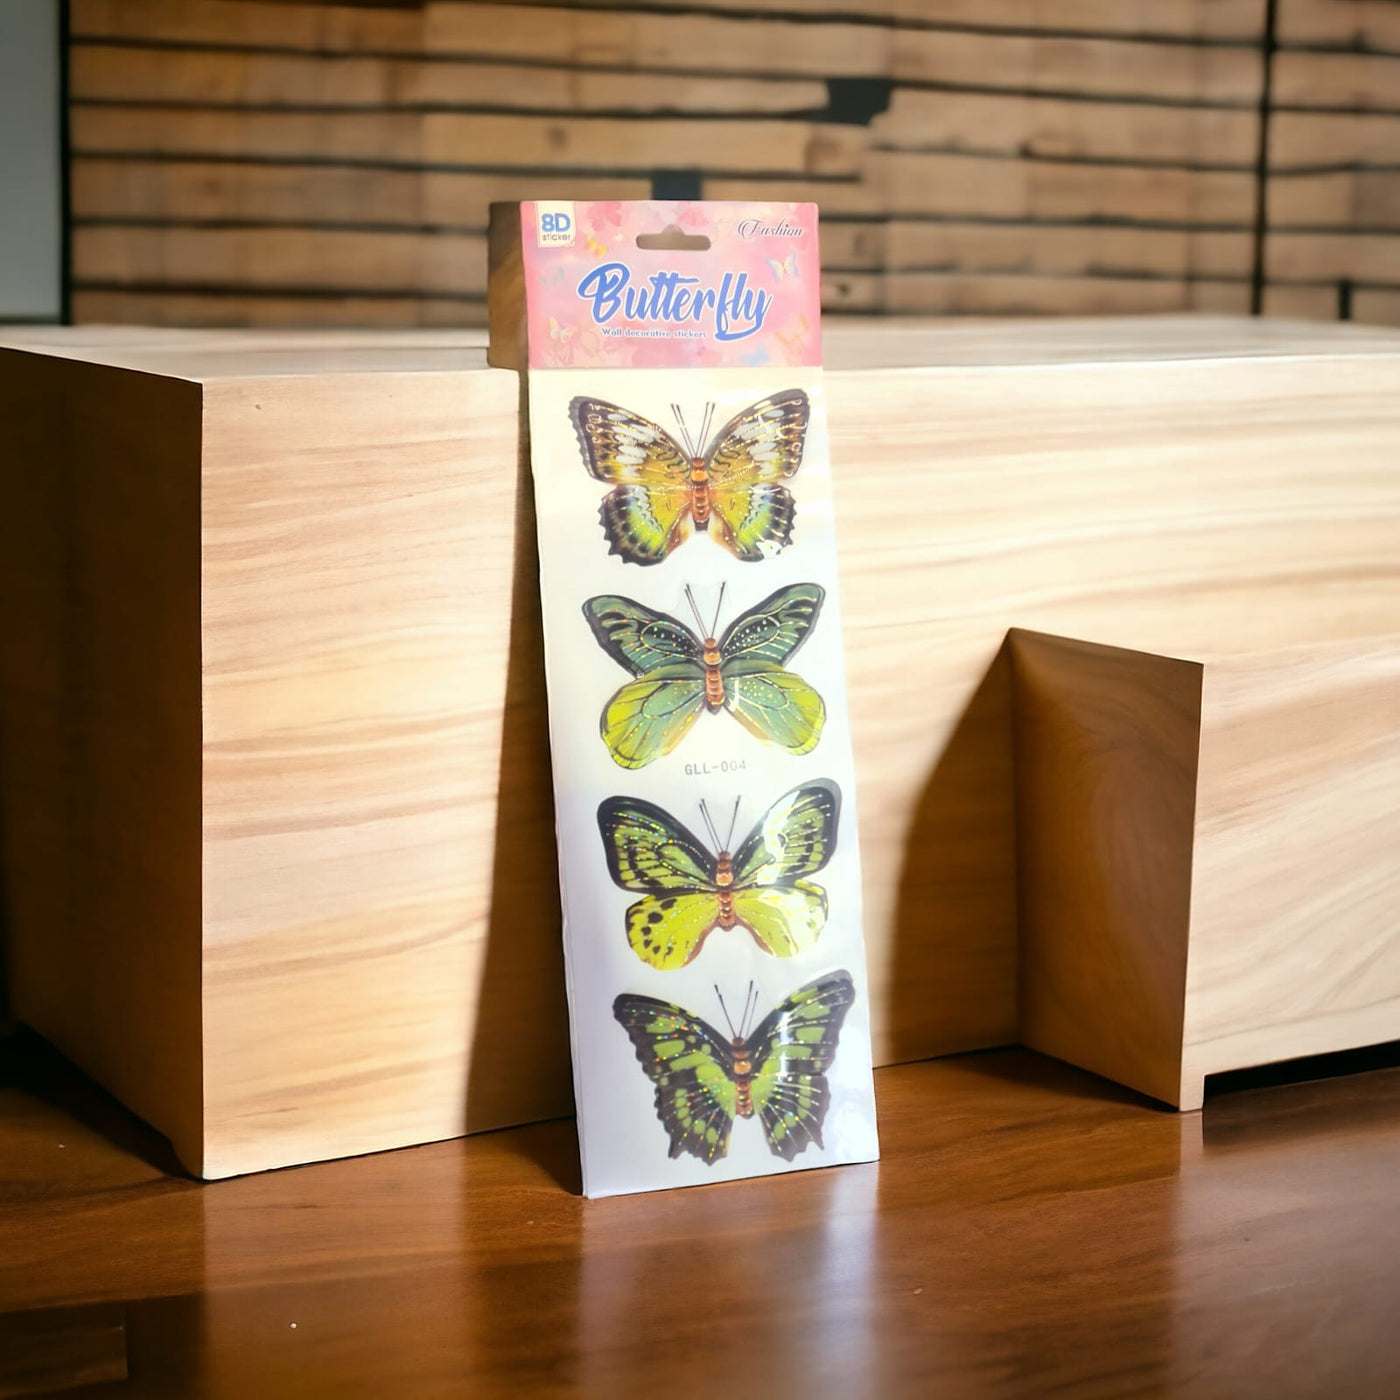 8d butterfly sticker 4 pcs set